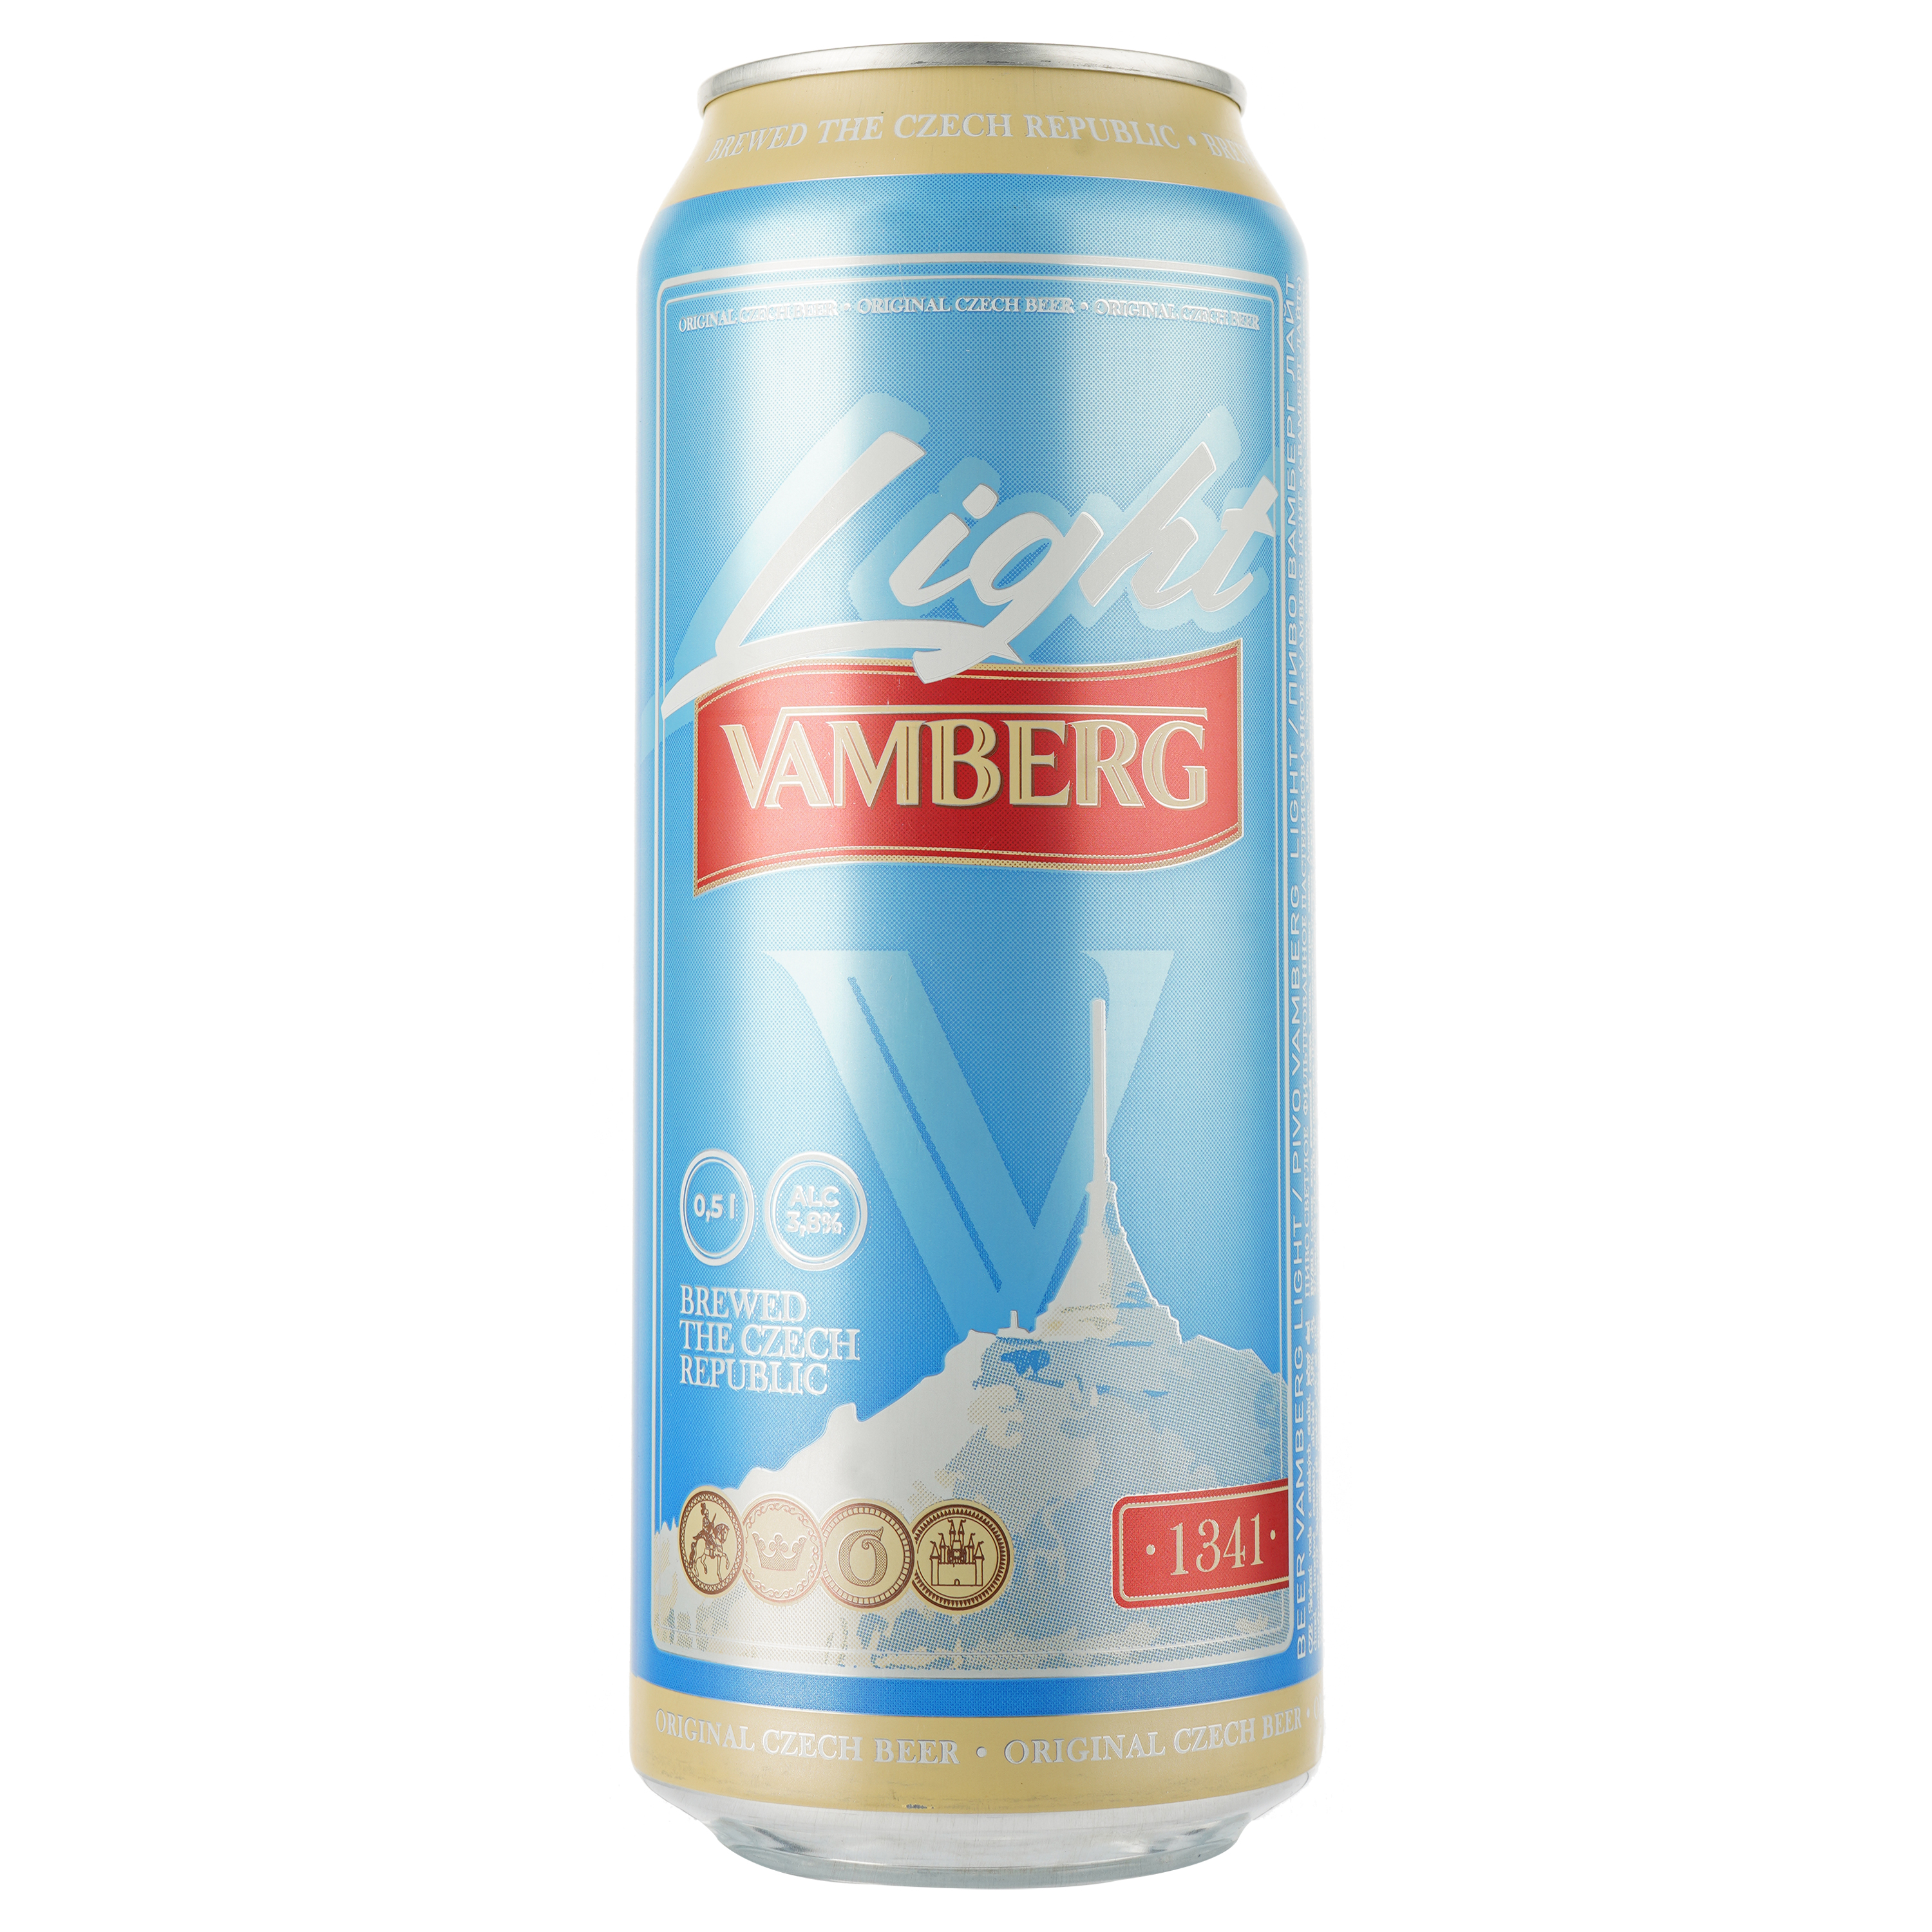 Пиво Vamberg Light светлое, 3.8%, ж/б, 0.5 л - фото 1